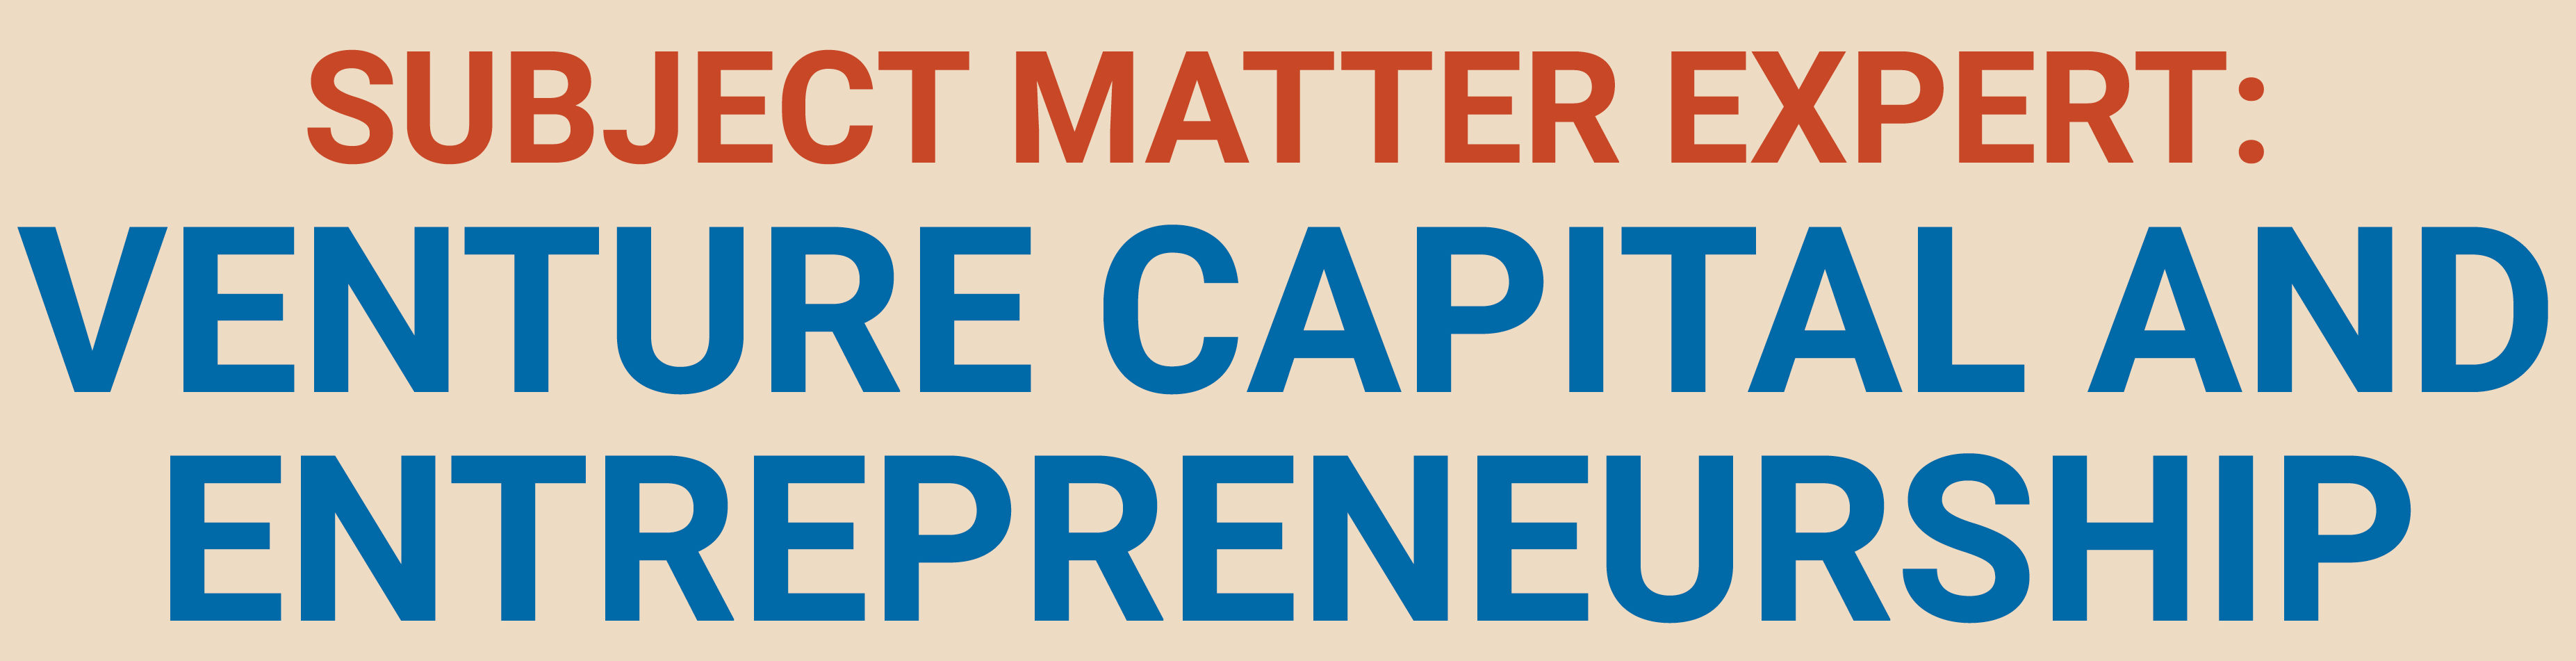 Subject Matter Expert: Venture Capital and Entrepreneurship